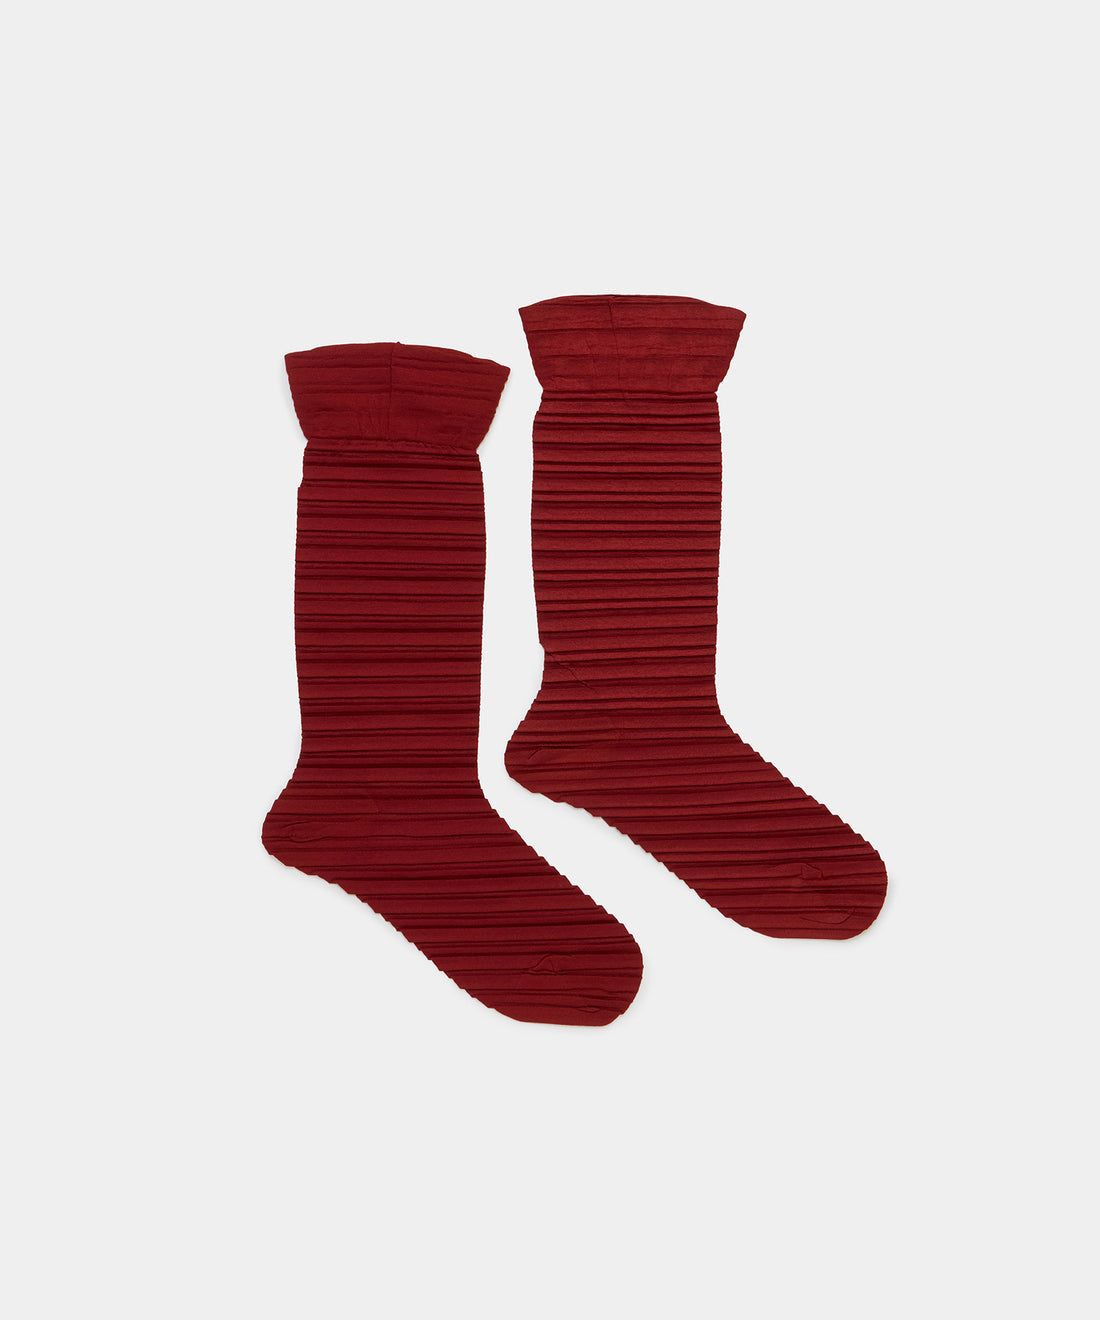 Crushed Socks